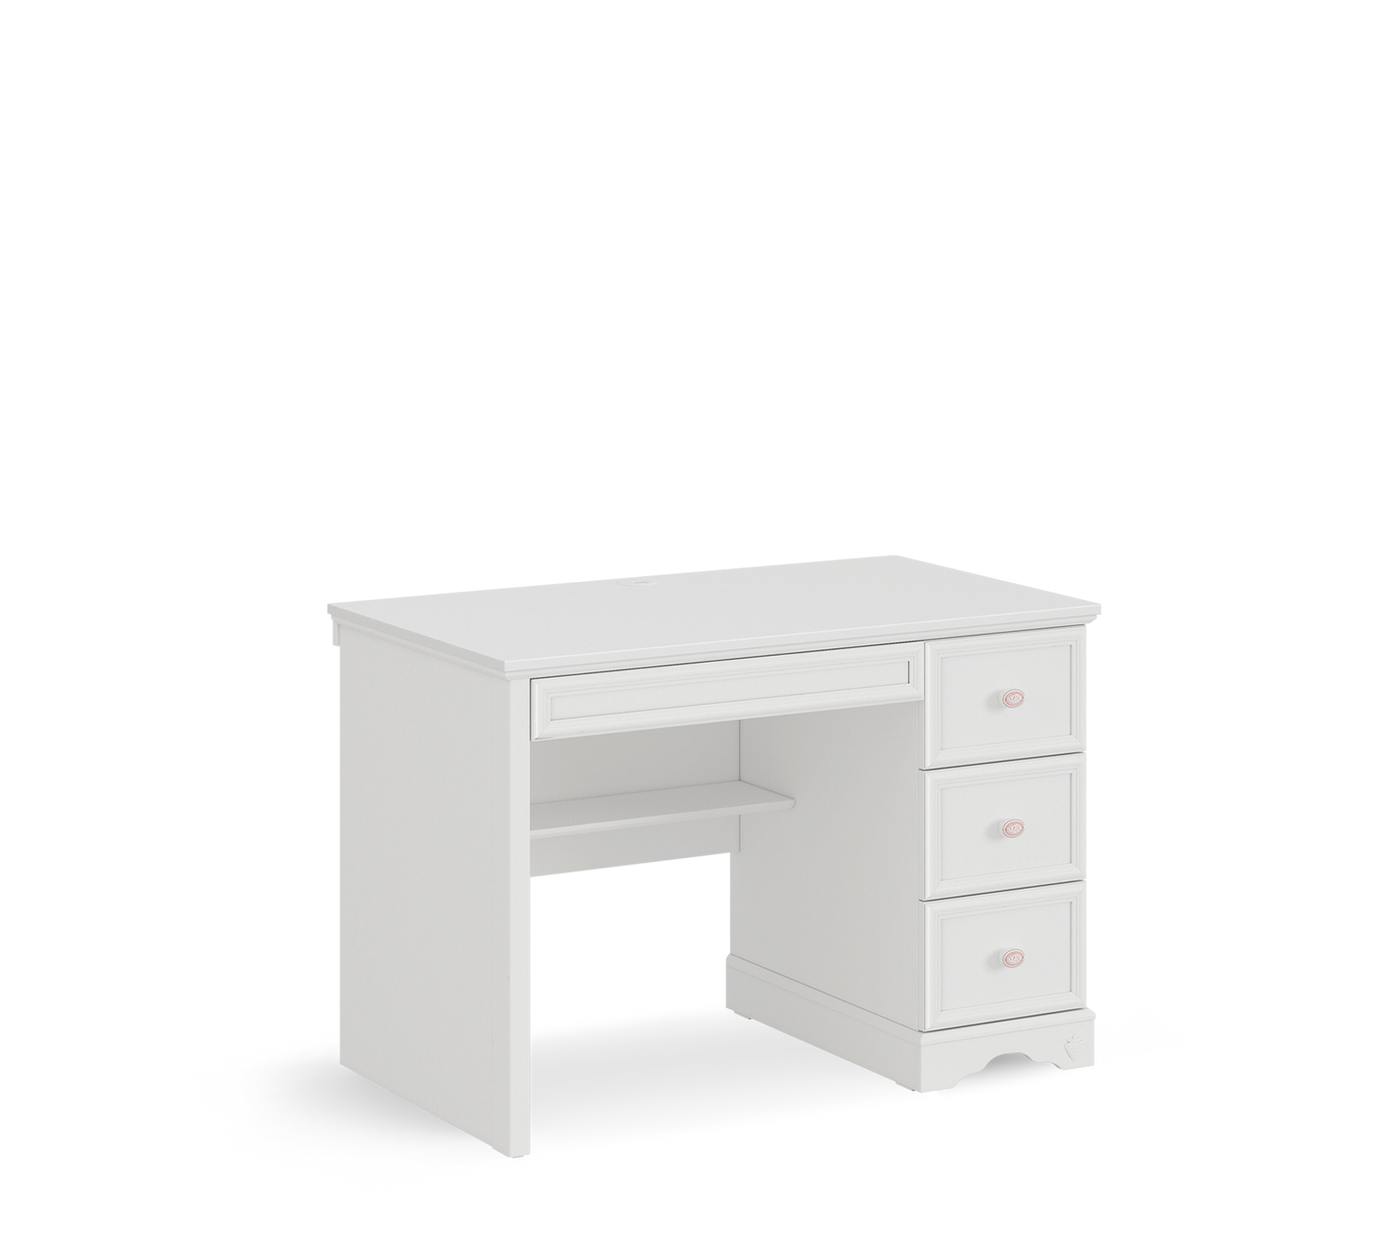 RUSTIC WHITE Tavolinë pune e vogël